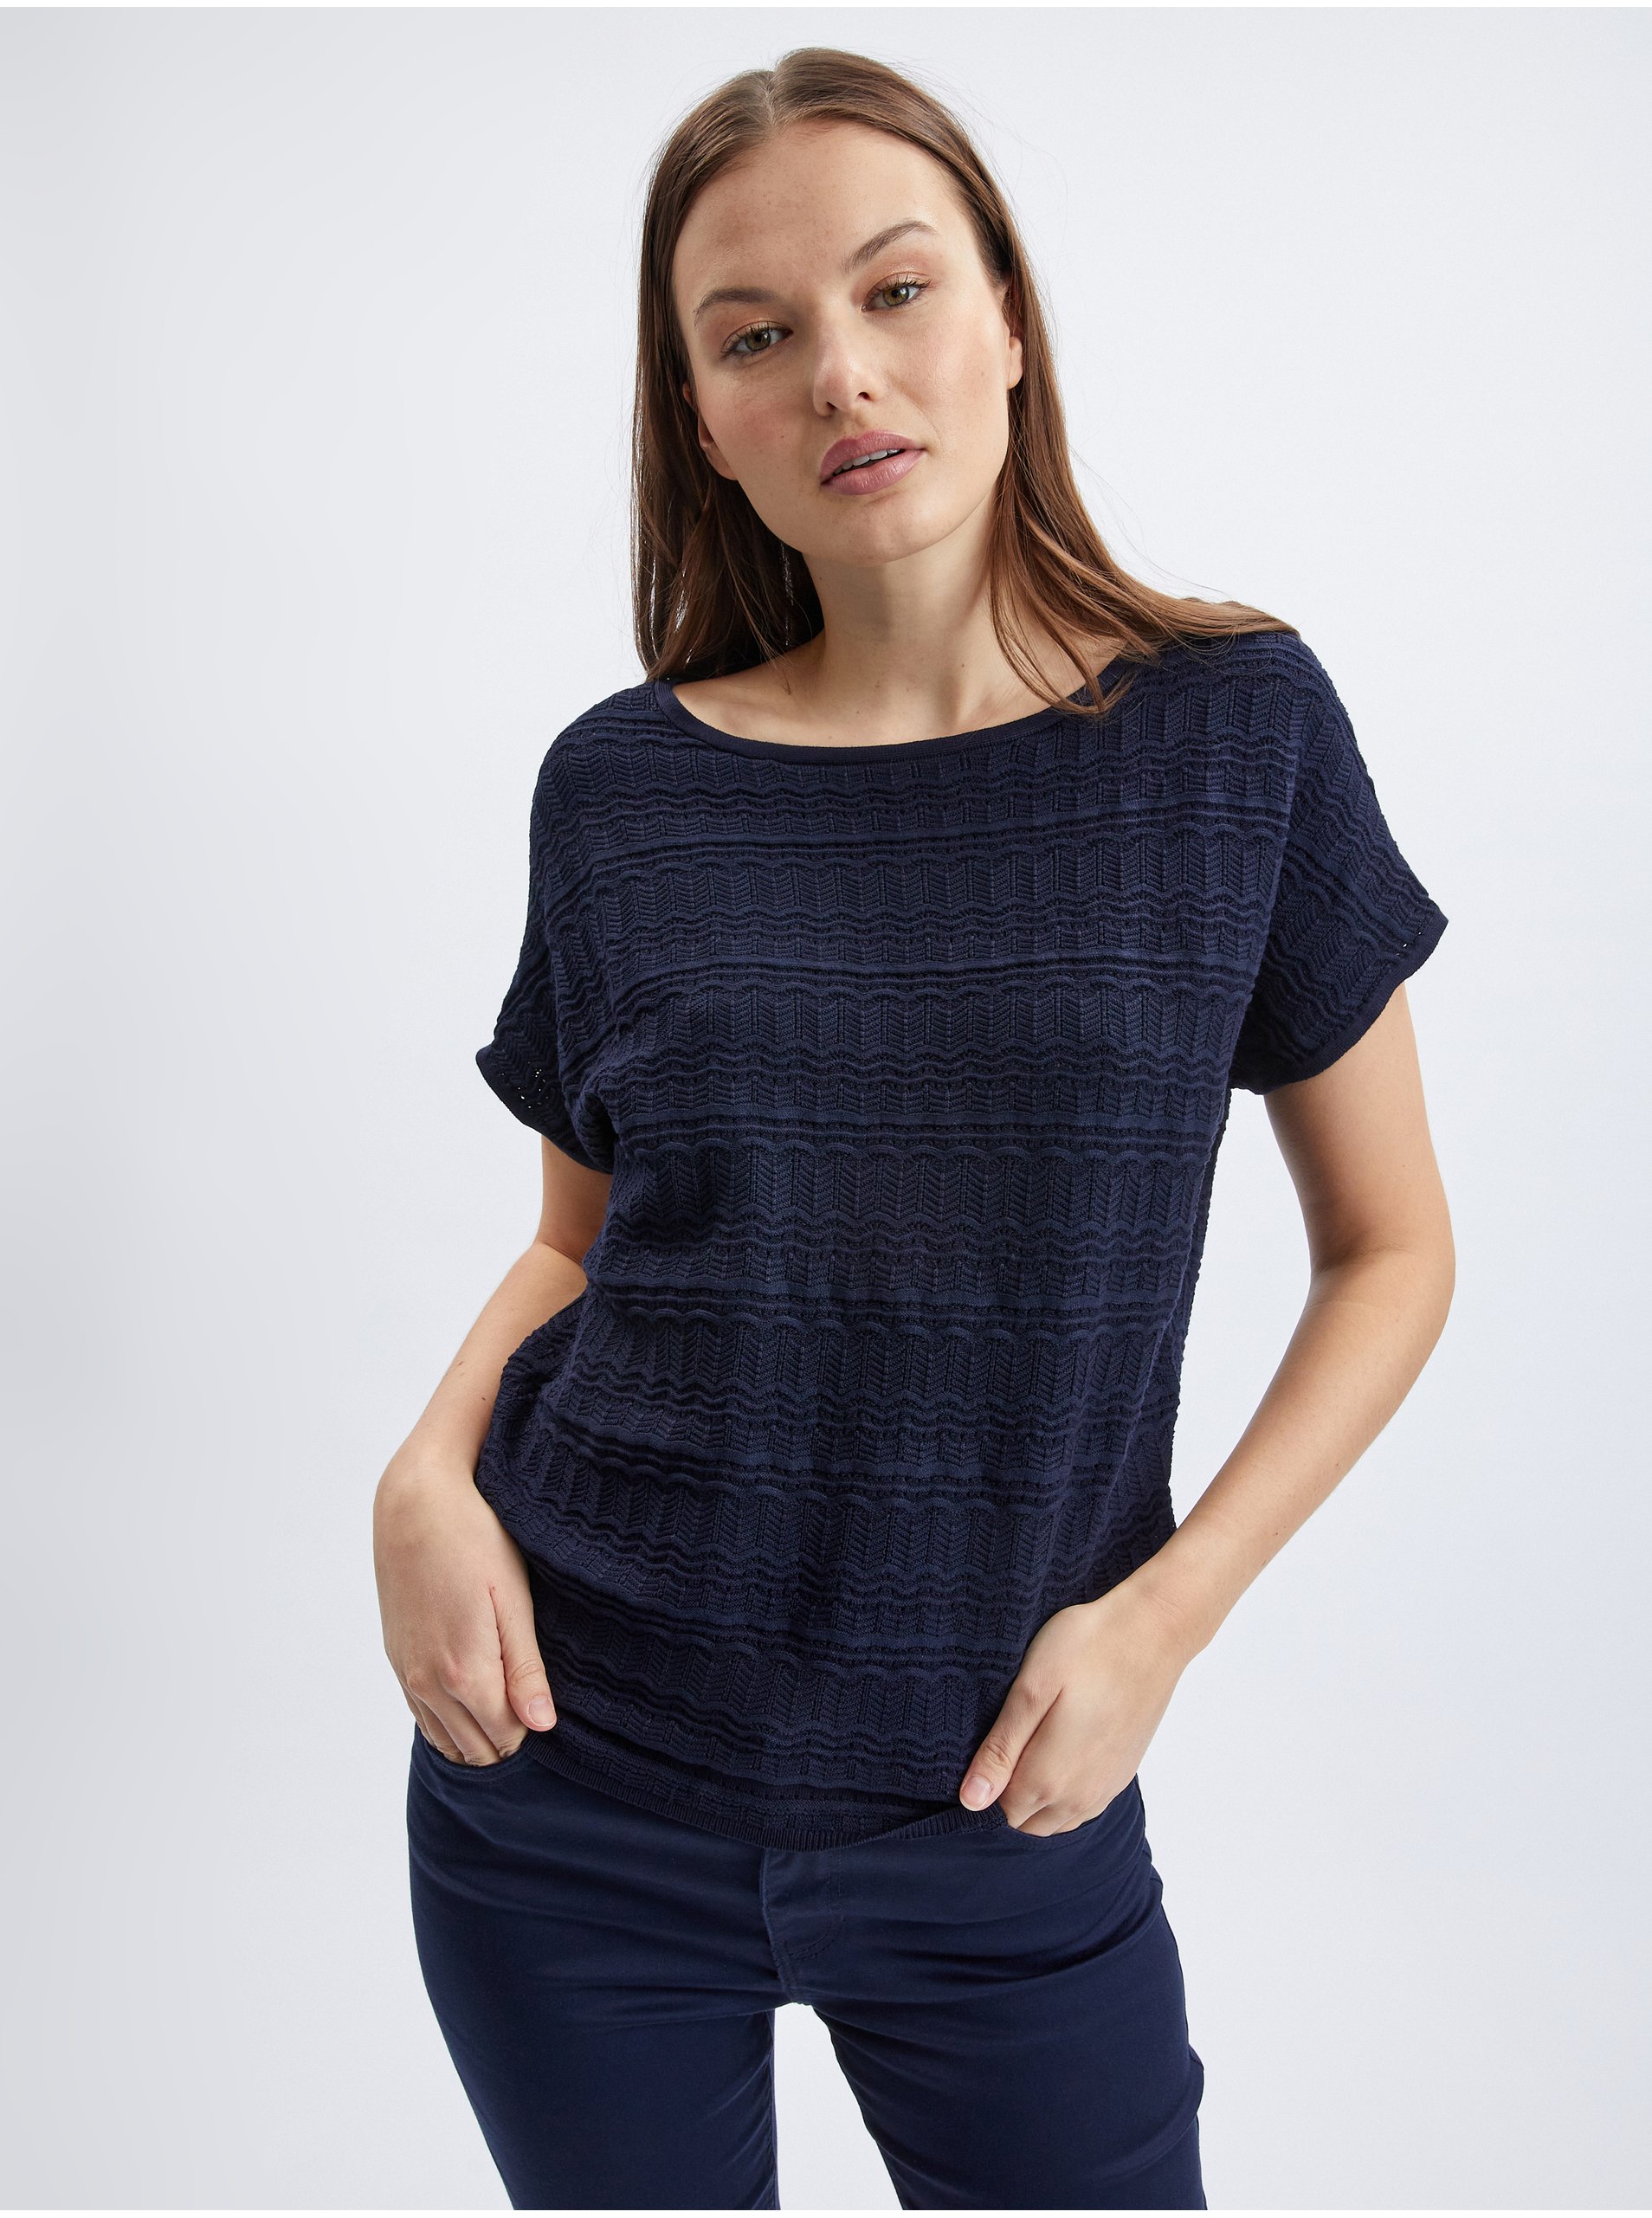 E-shop Tmavě modrý dámský svetr s krátkým rukávem ORSAY